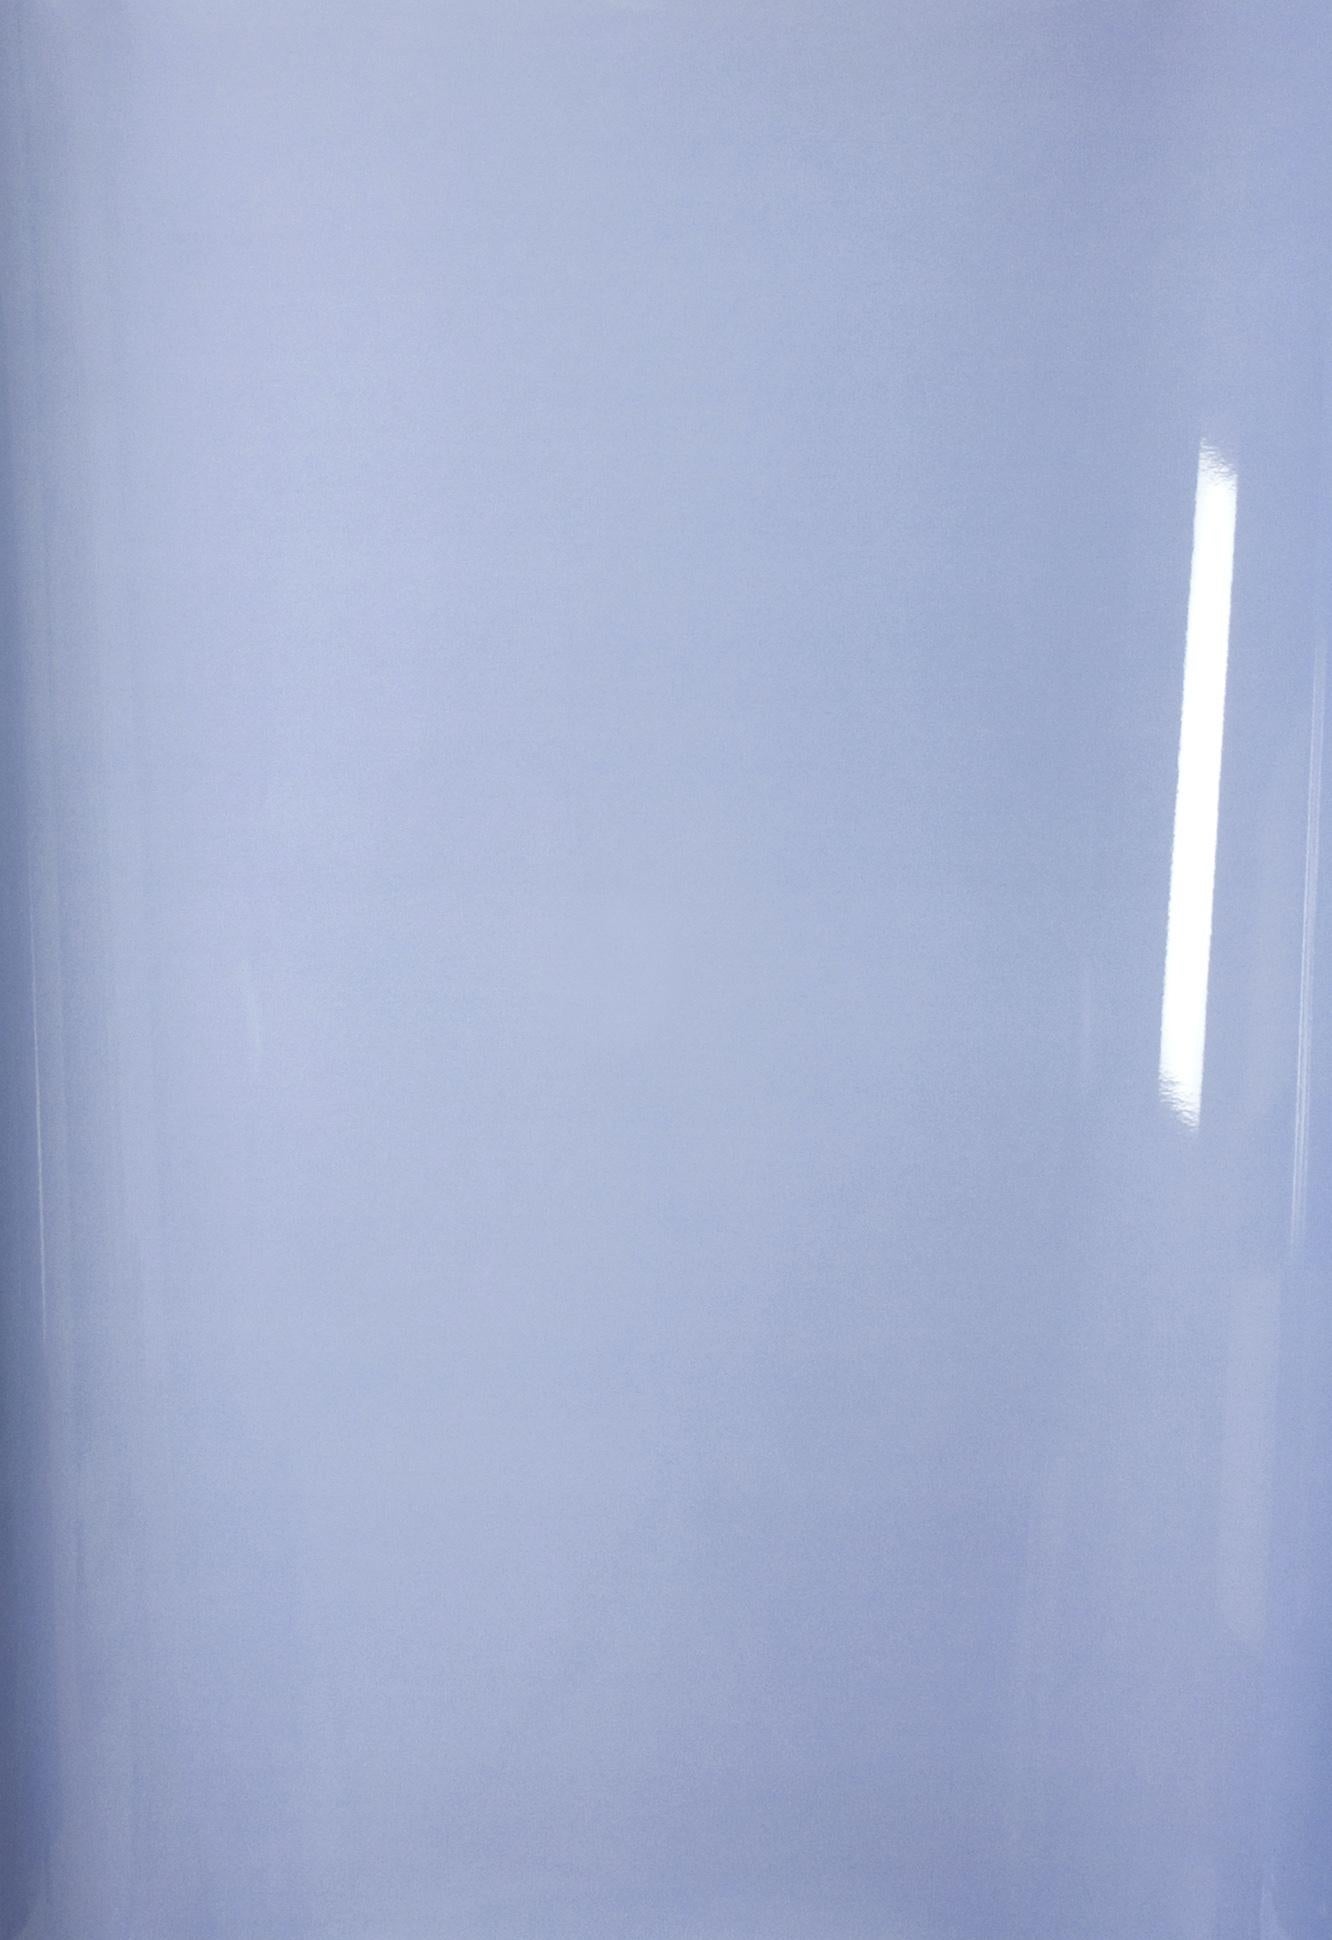 Shadows on Paper, Nr 2 – Zeitgenössische abstrakte blaue monochrome Fotografie